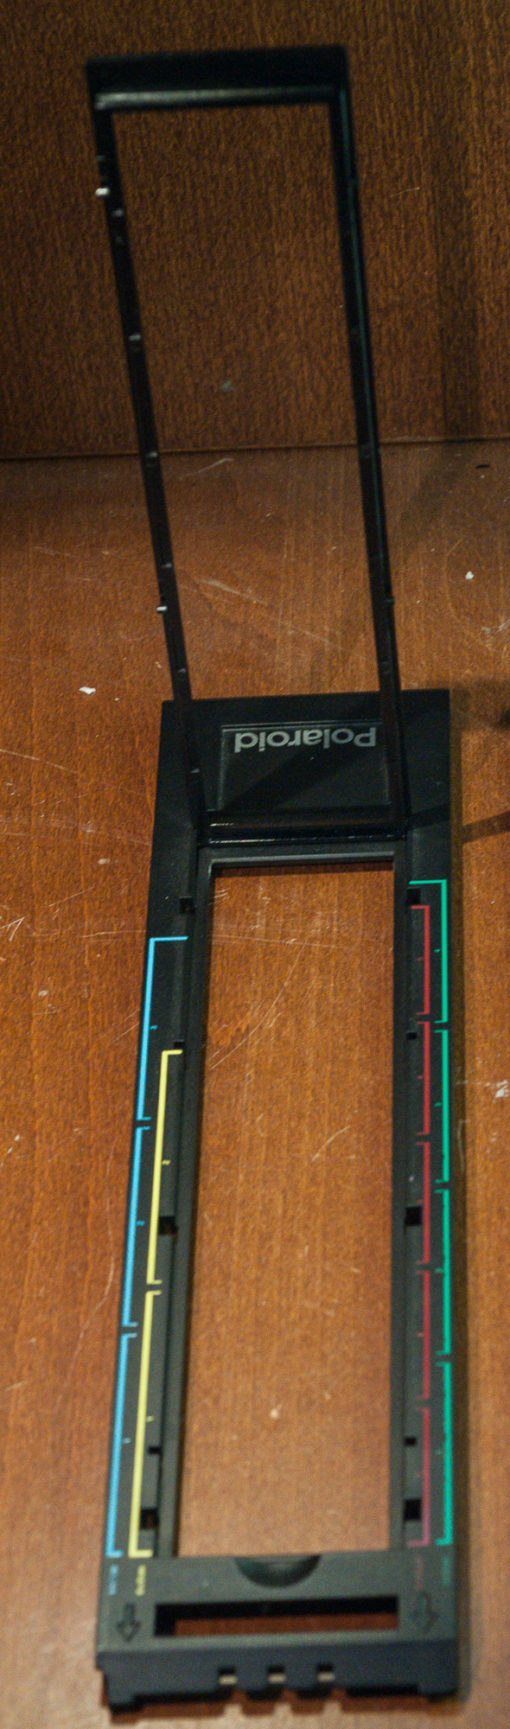 Polaroid 120 Film Scanner Model CS-120